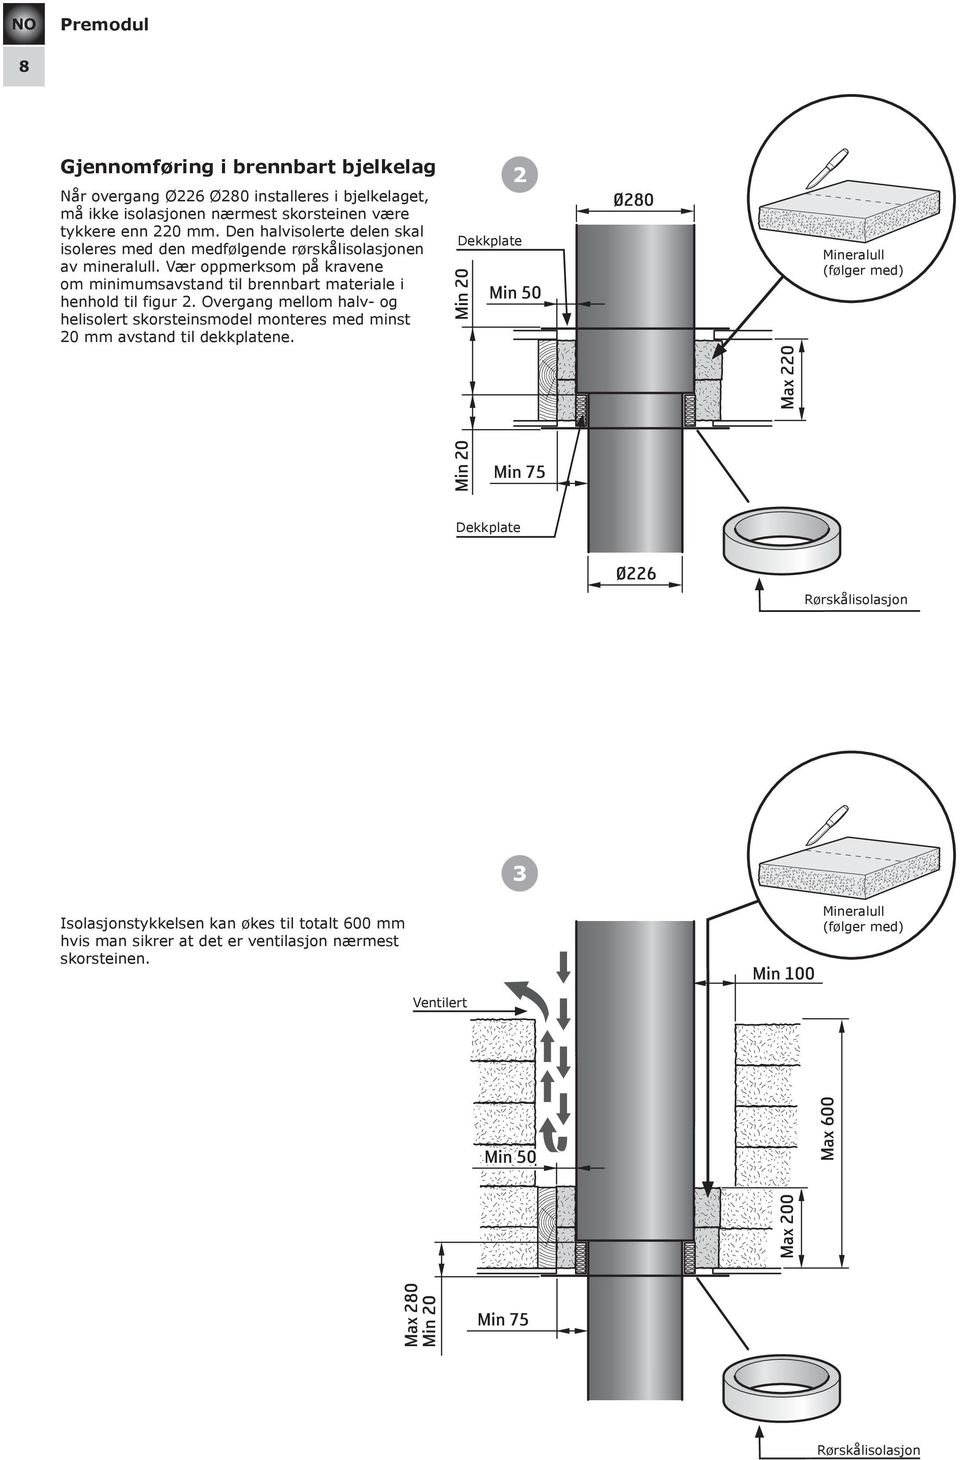 Overgang mellom halv- og helisolert skorsteinsmodel monteres med minst 20 mm avstand til dekkplatene.